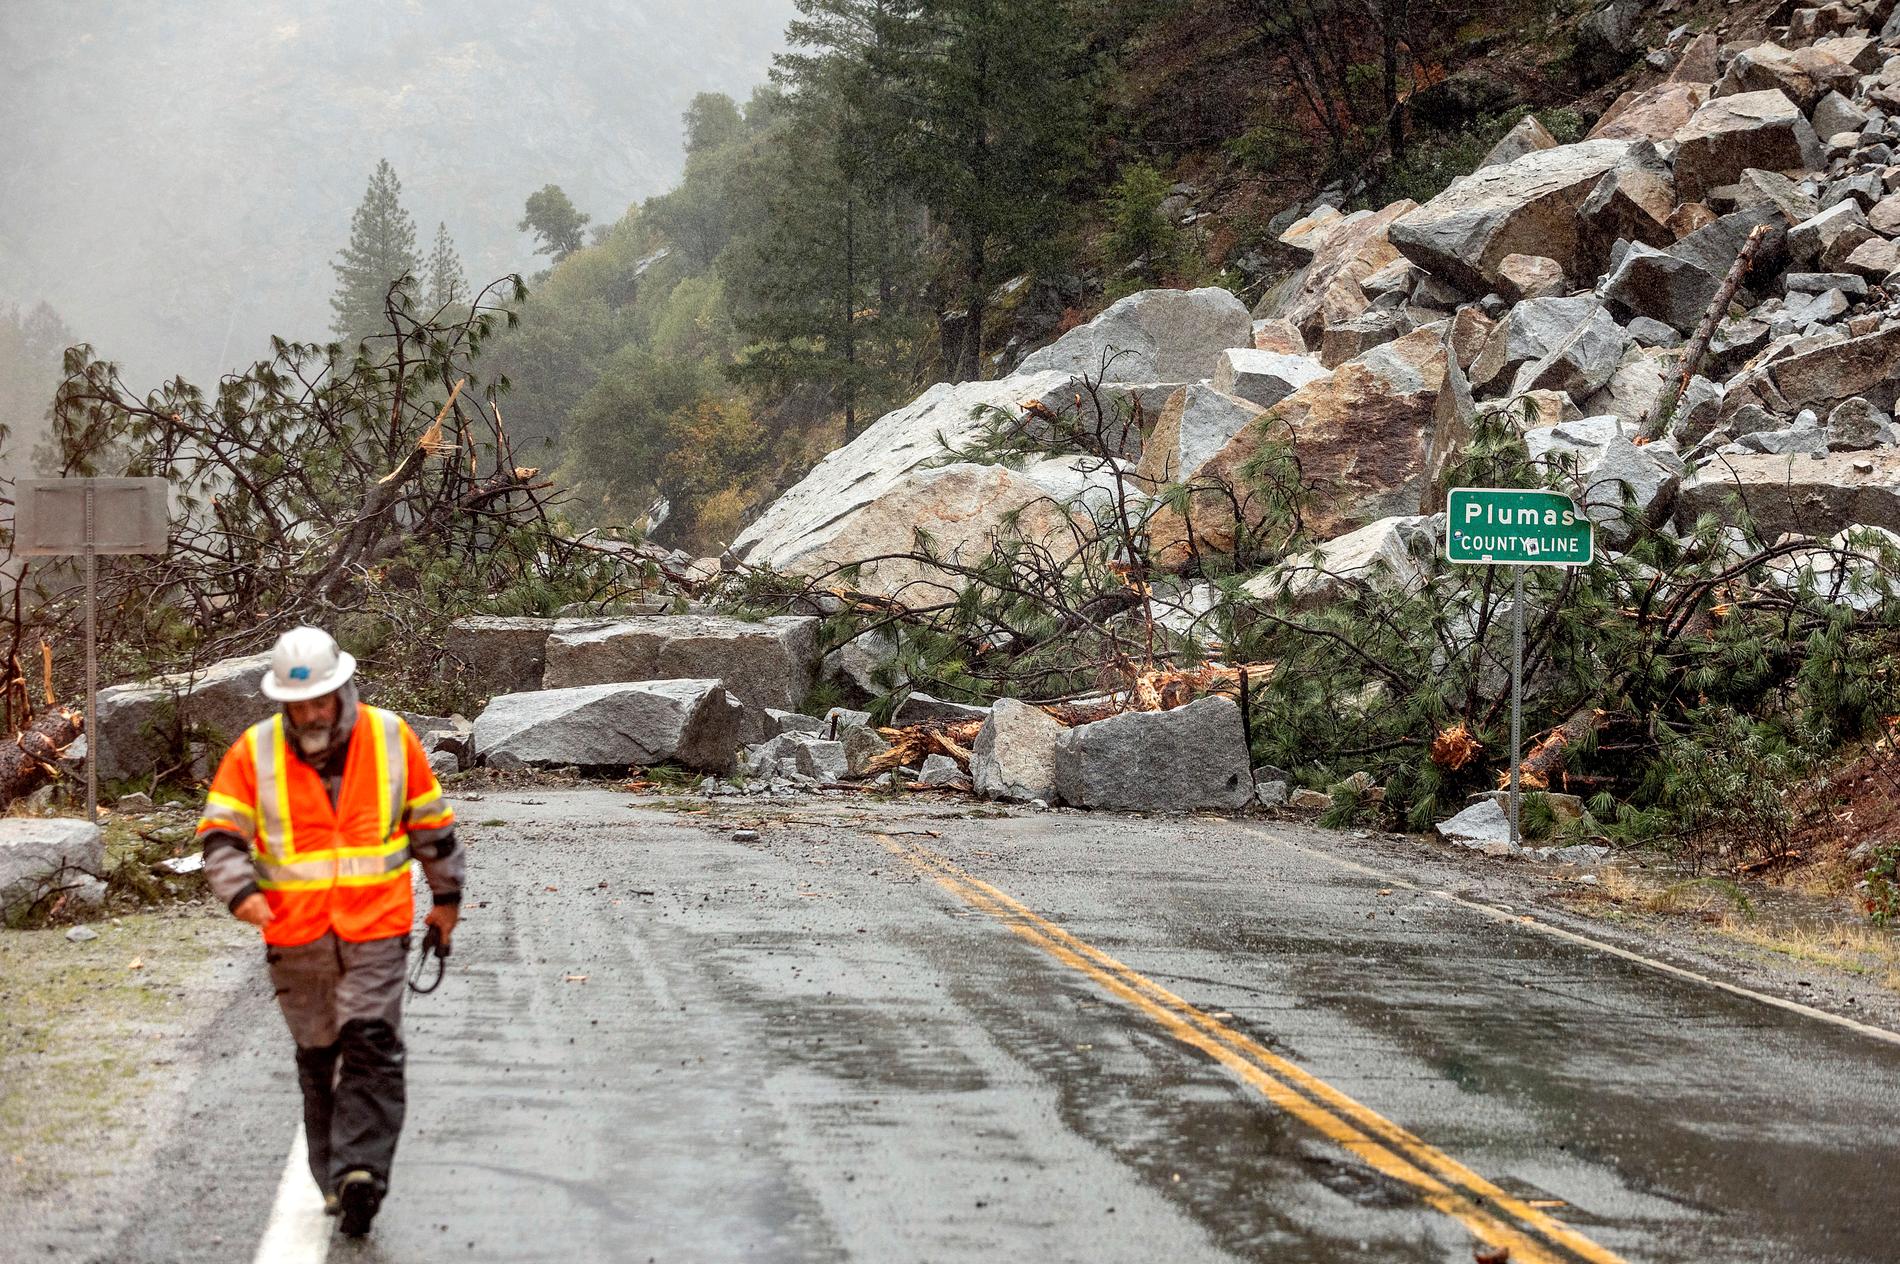 Ett jordskred orsakat av skyfall i Plumas county i norra Kalifornien i USA.